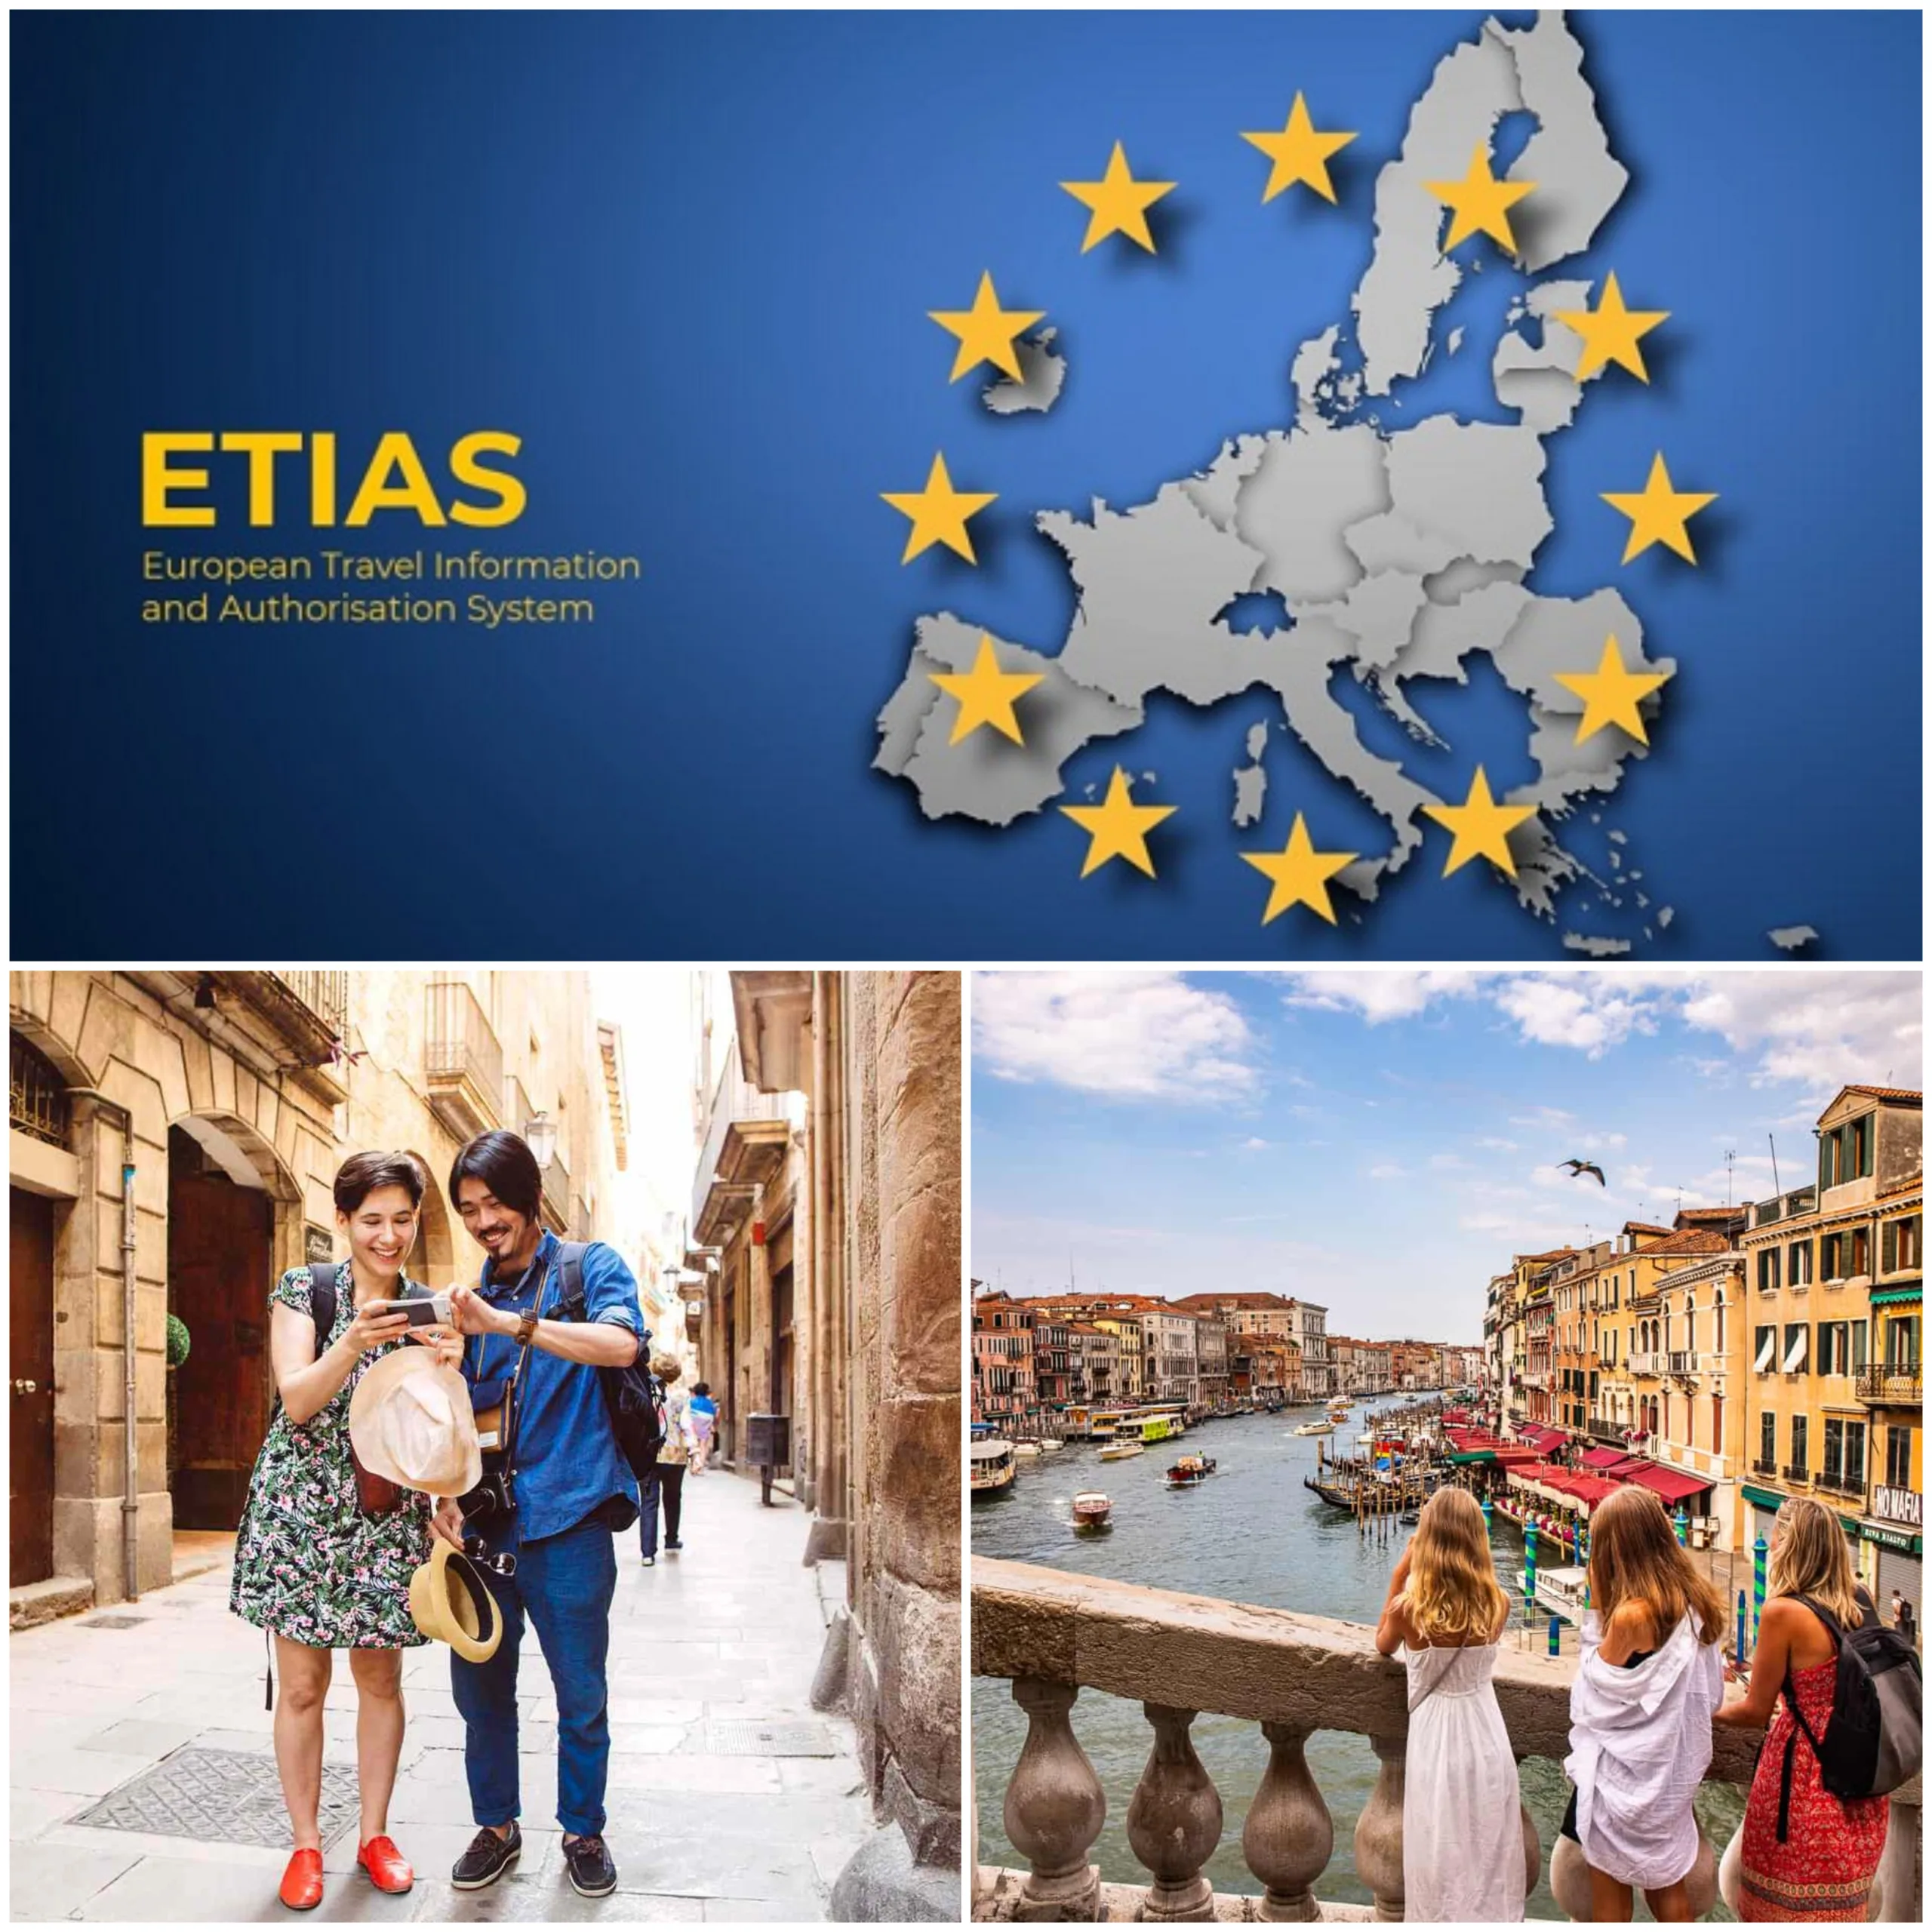 ETIAS work in Europe